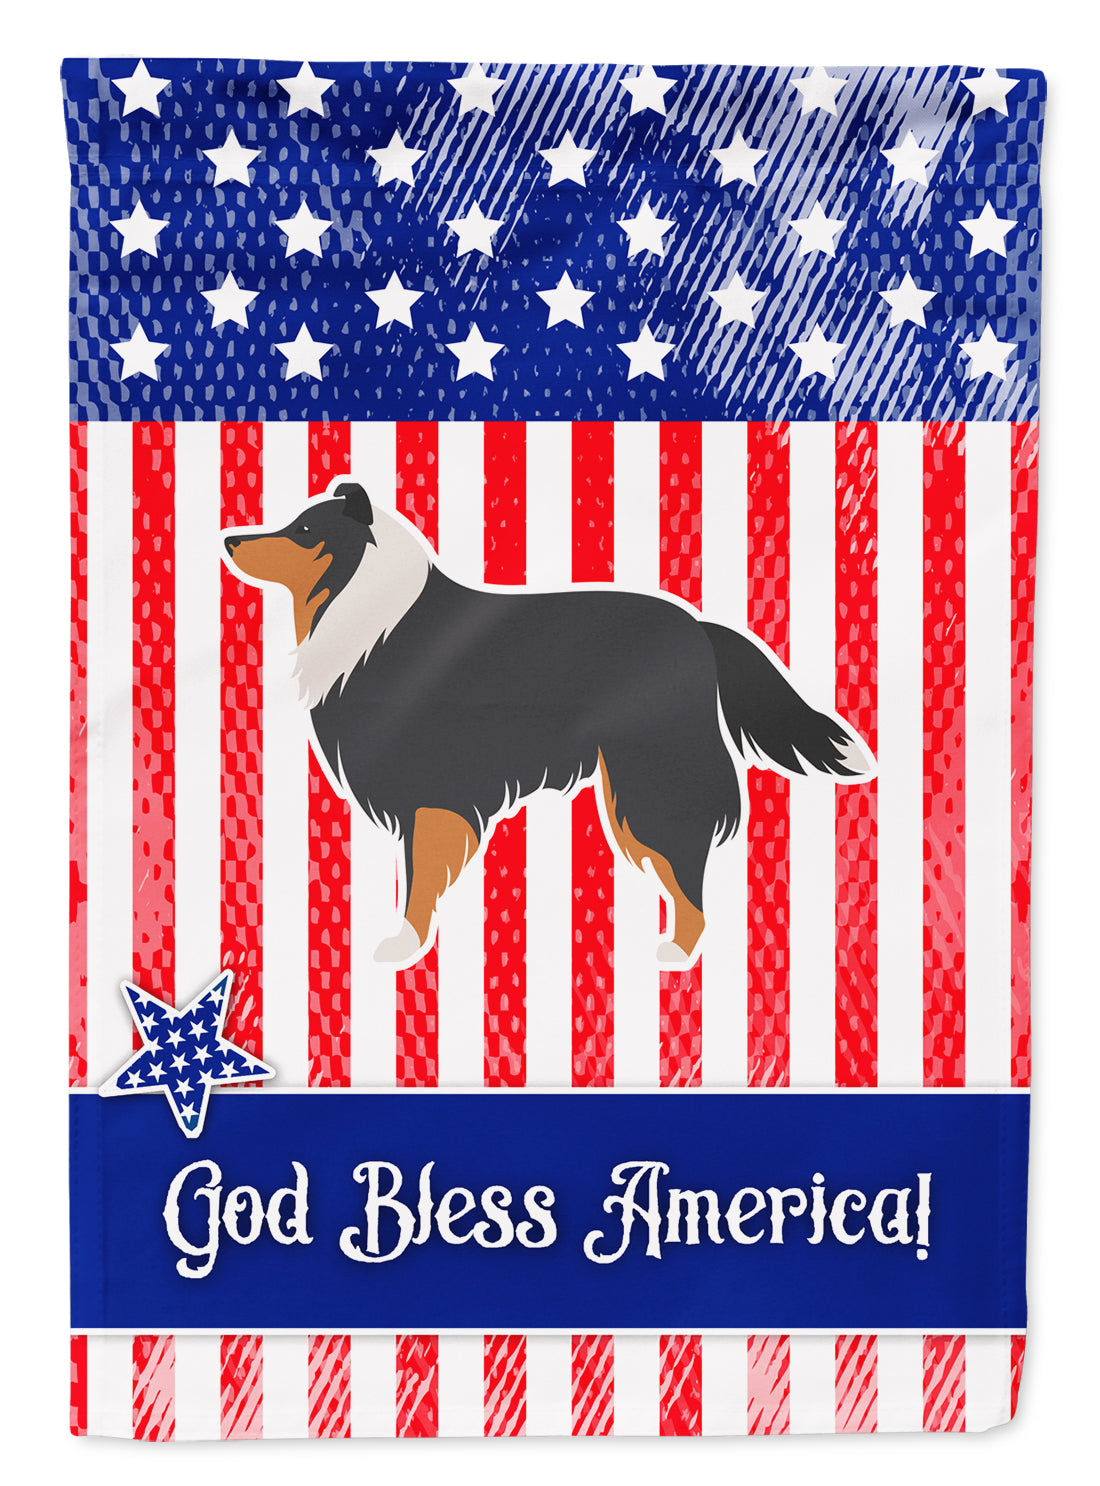 USA Patriotic Sheltie/Shetland Sheepdog Flag Garden Size BB3330GF  the-store.com.